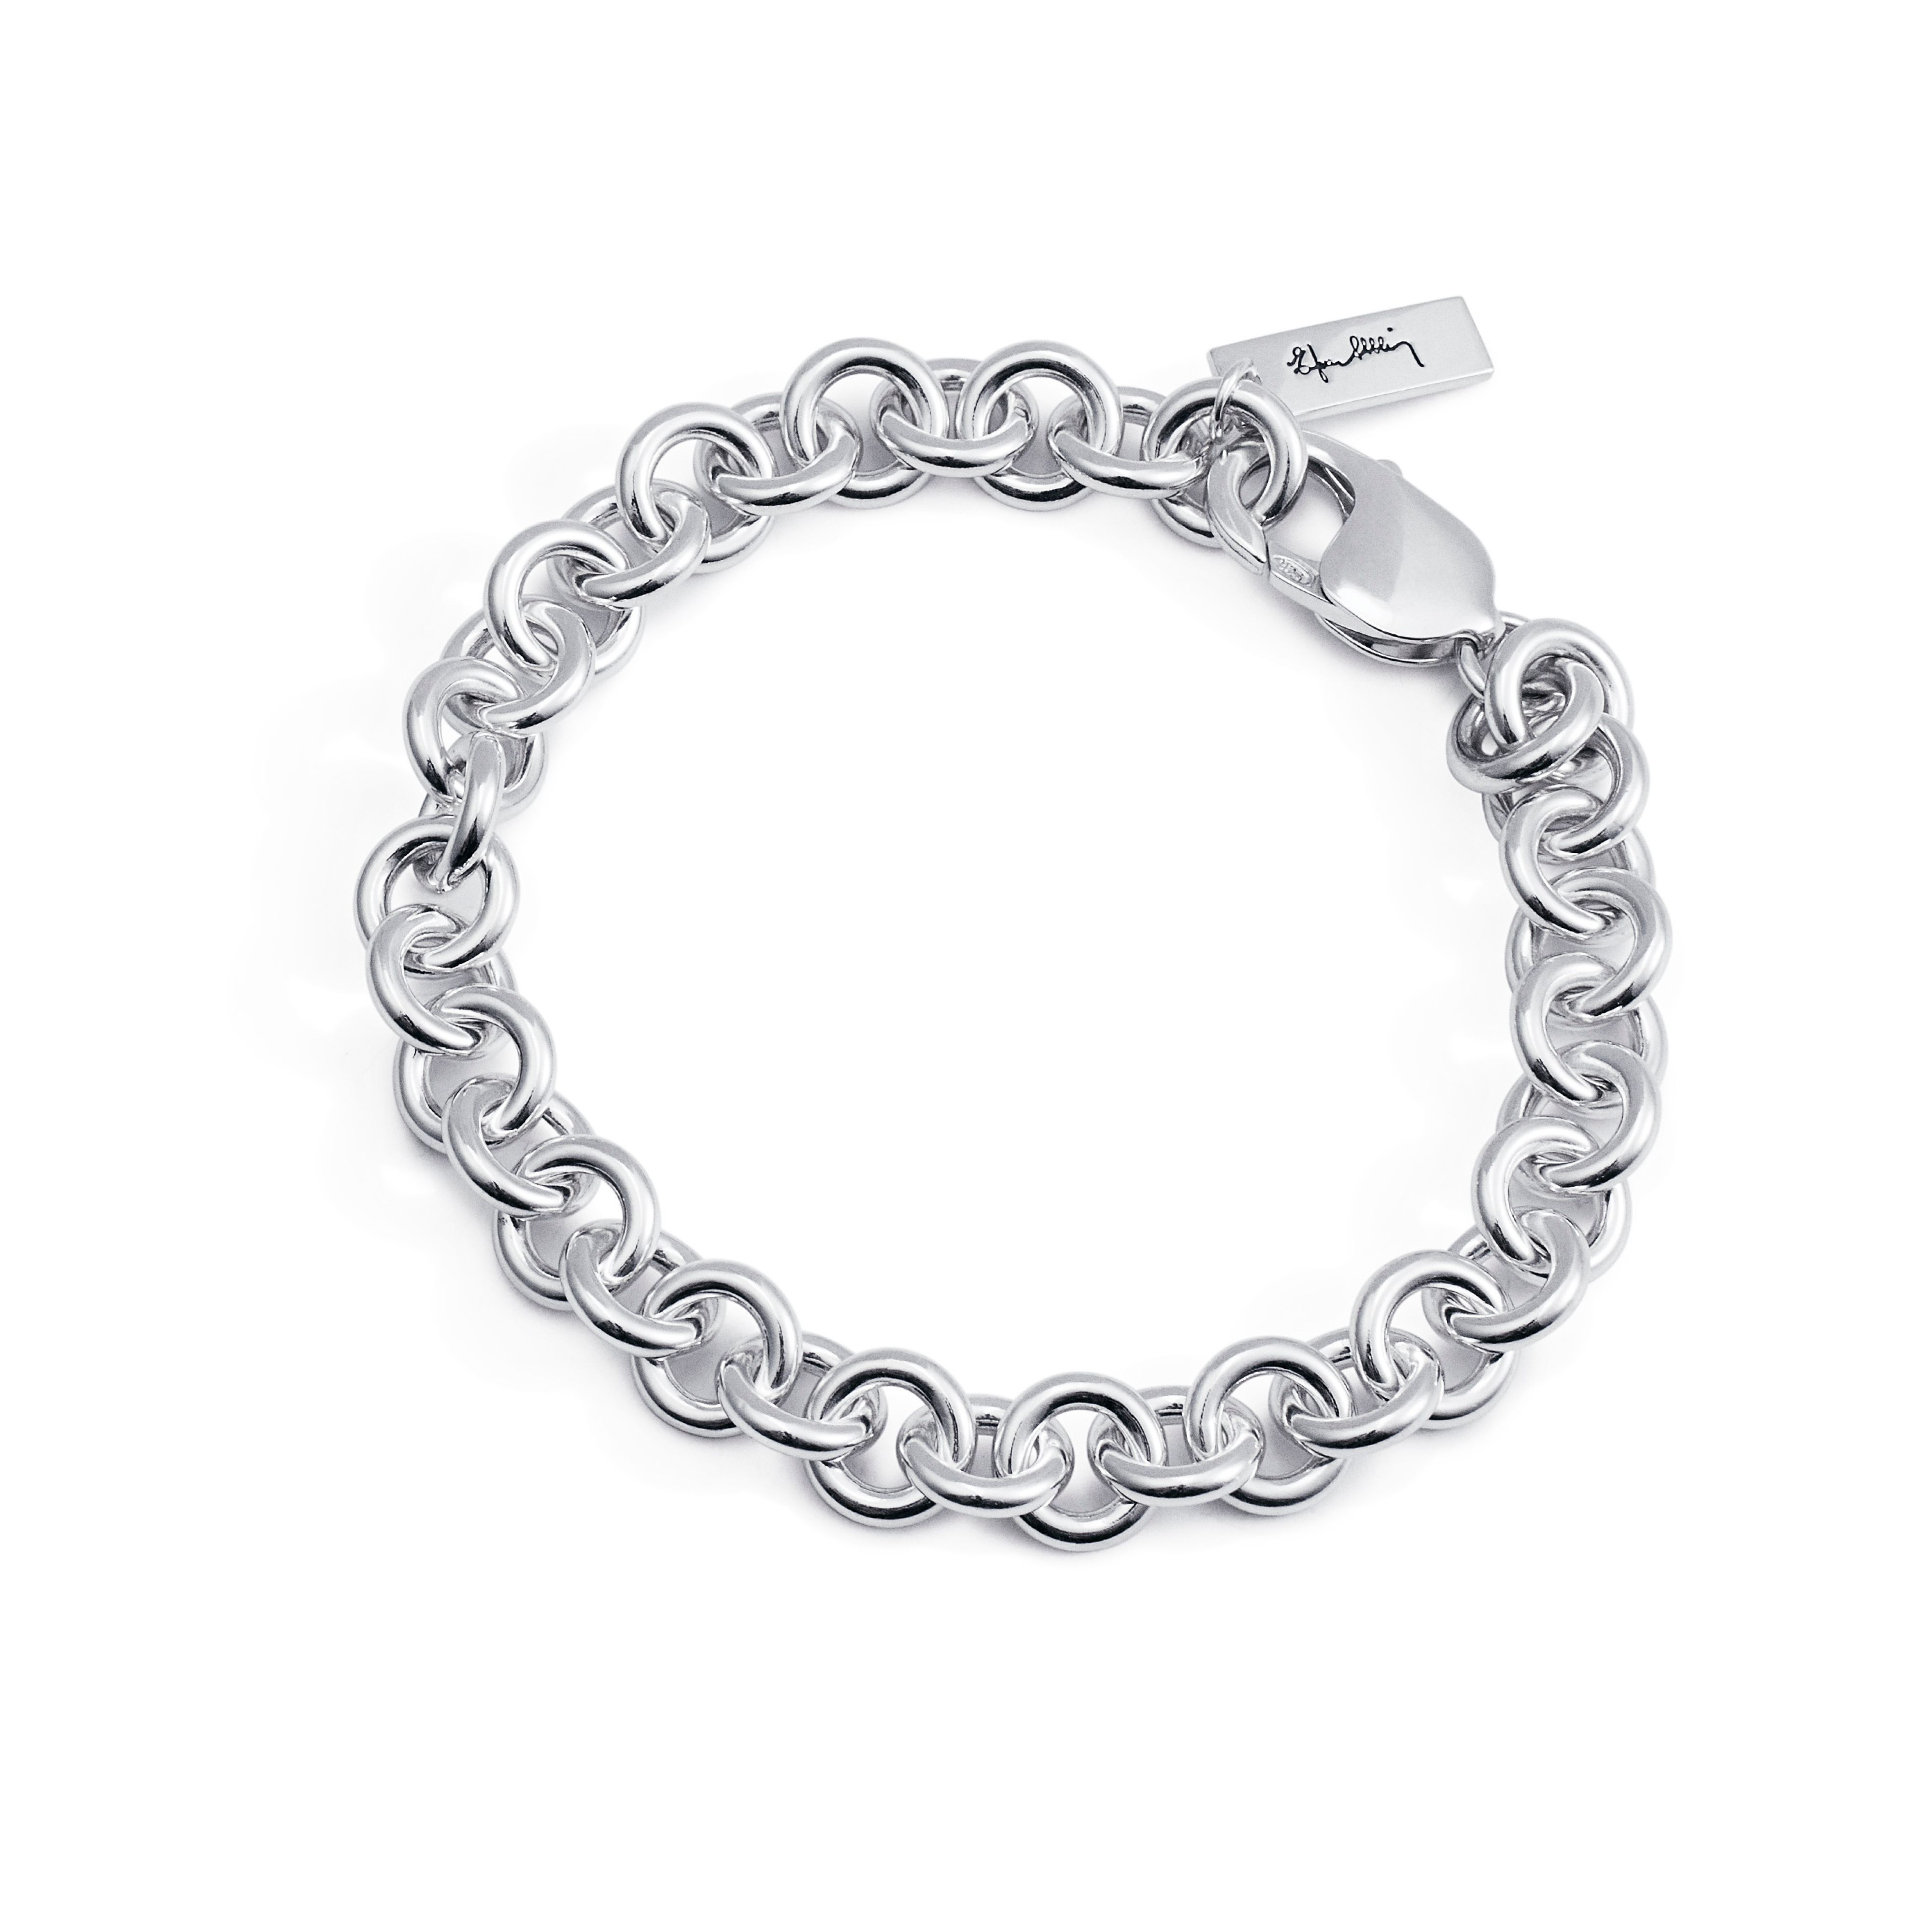 Efva Attling Chain Bracelet 20 CM - SILVER